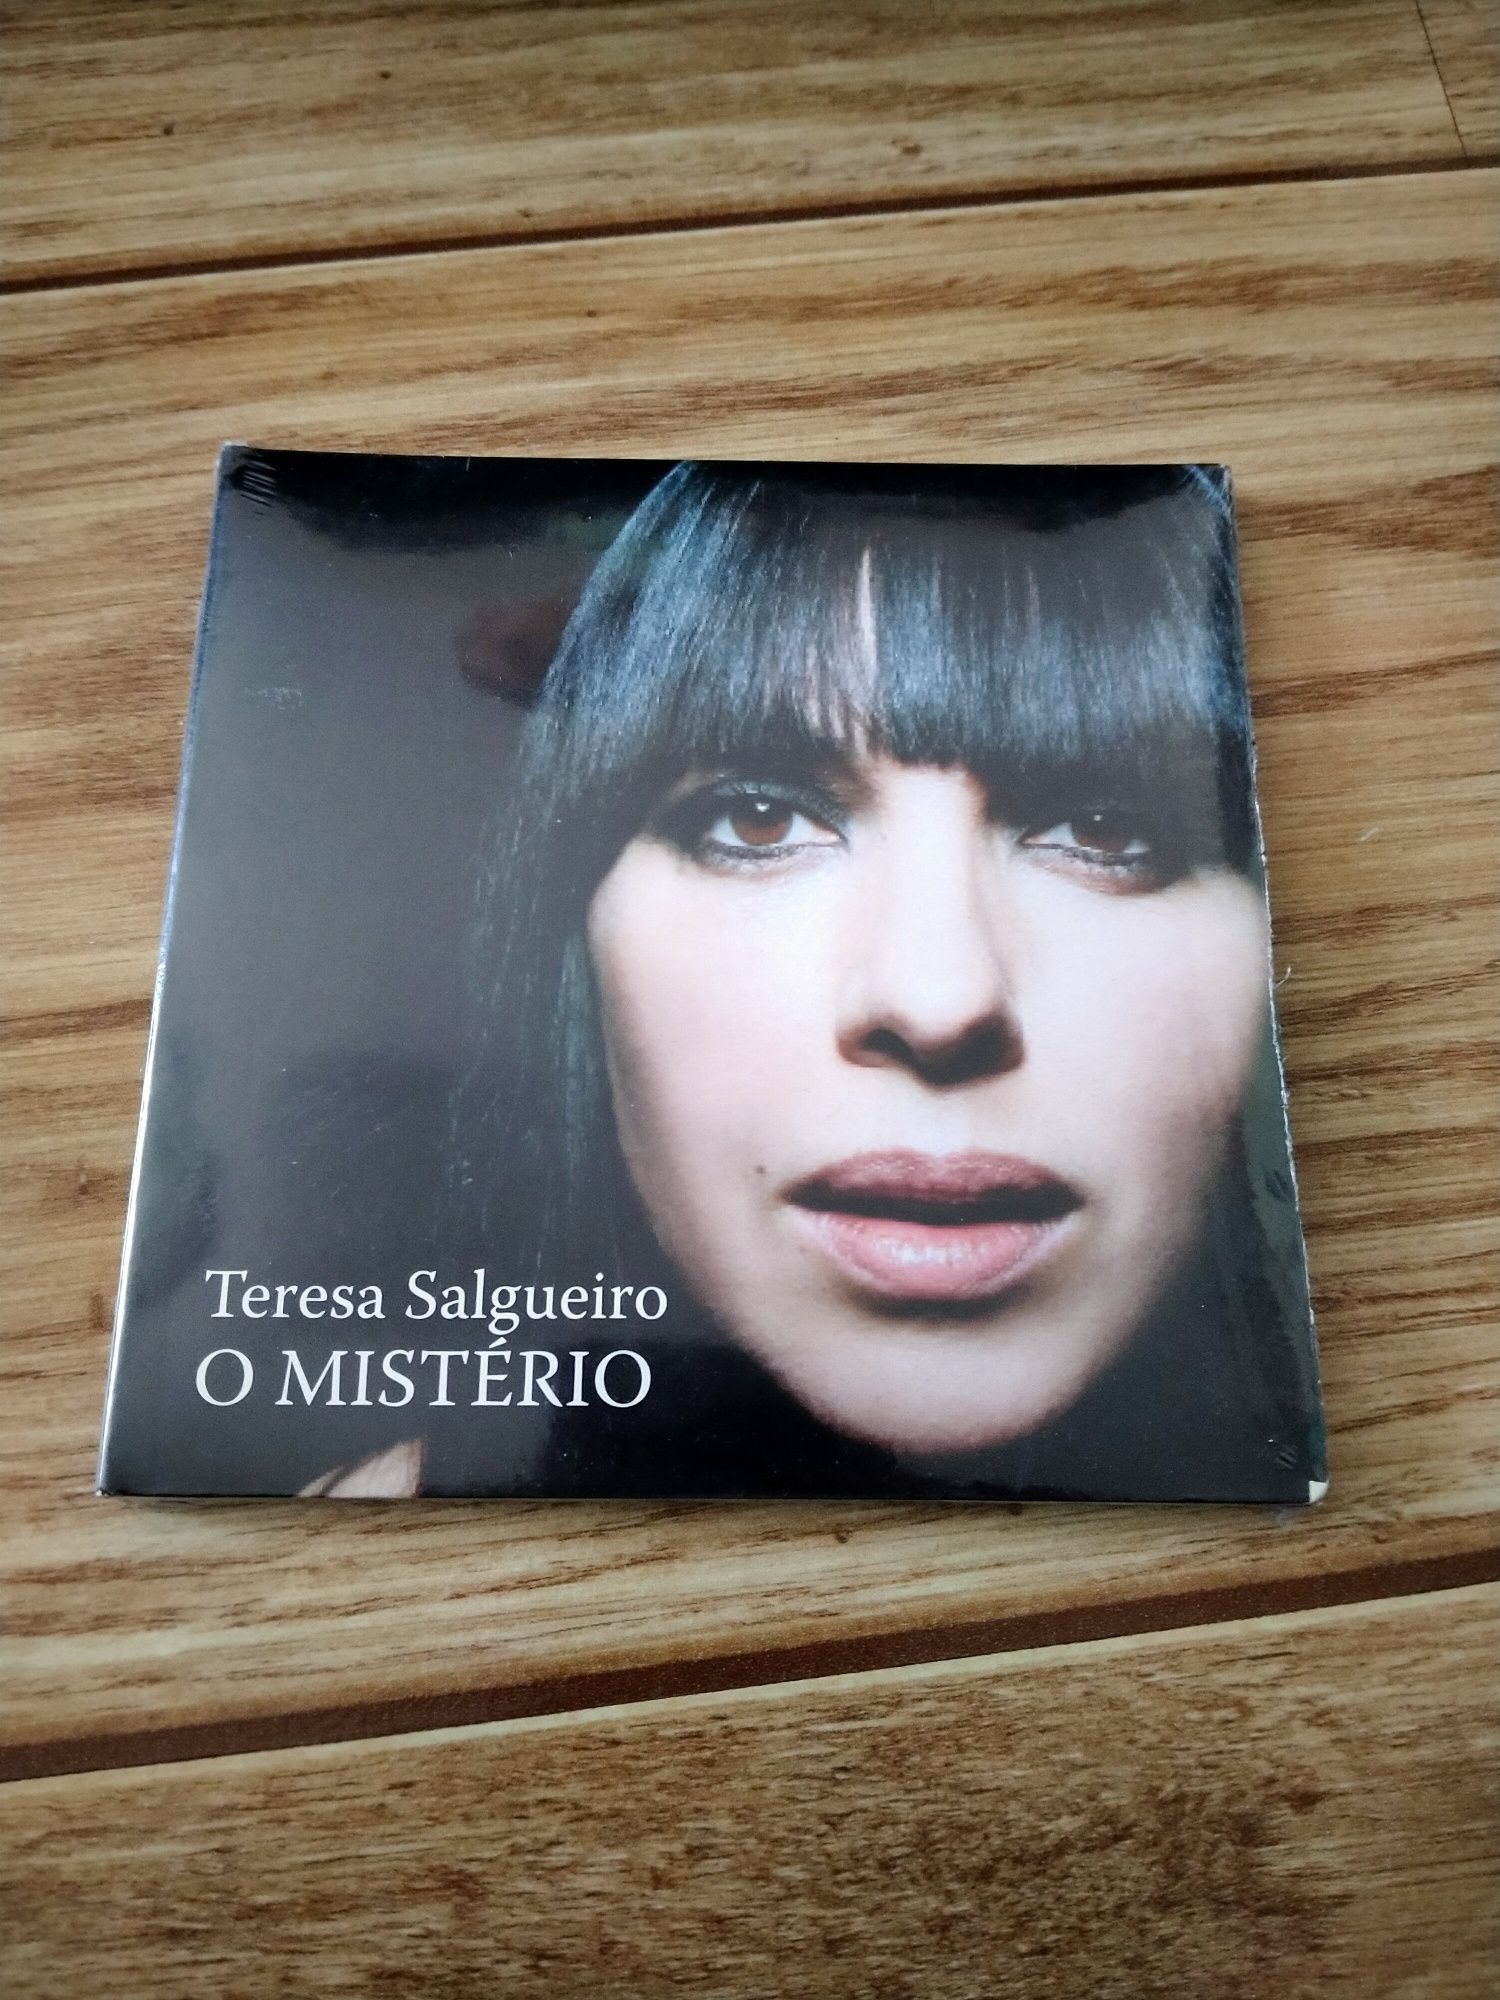 Teresa Salgueiro album O Misterio cd